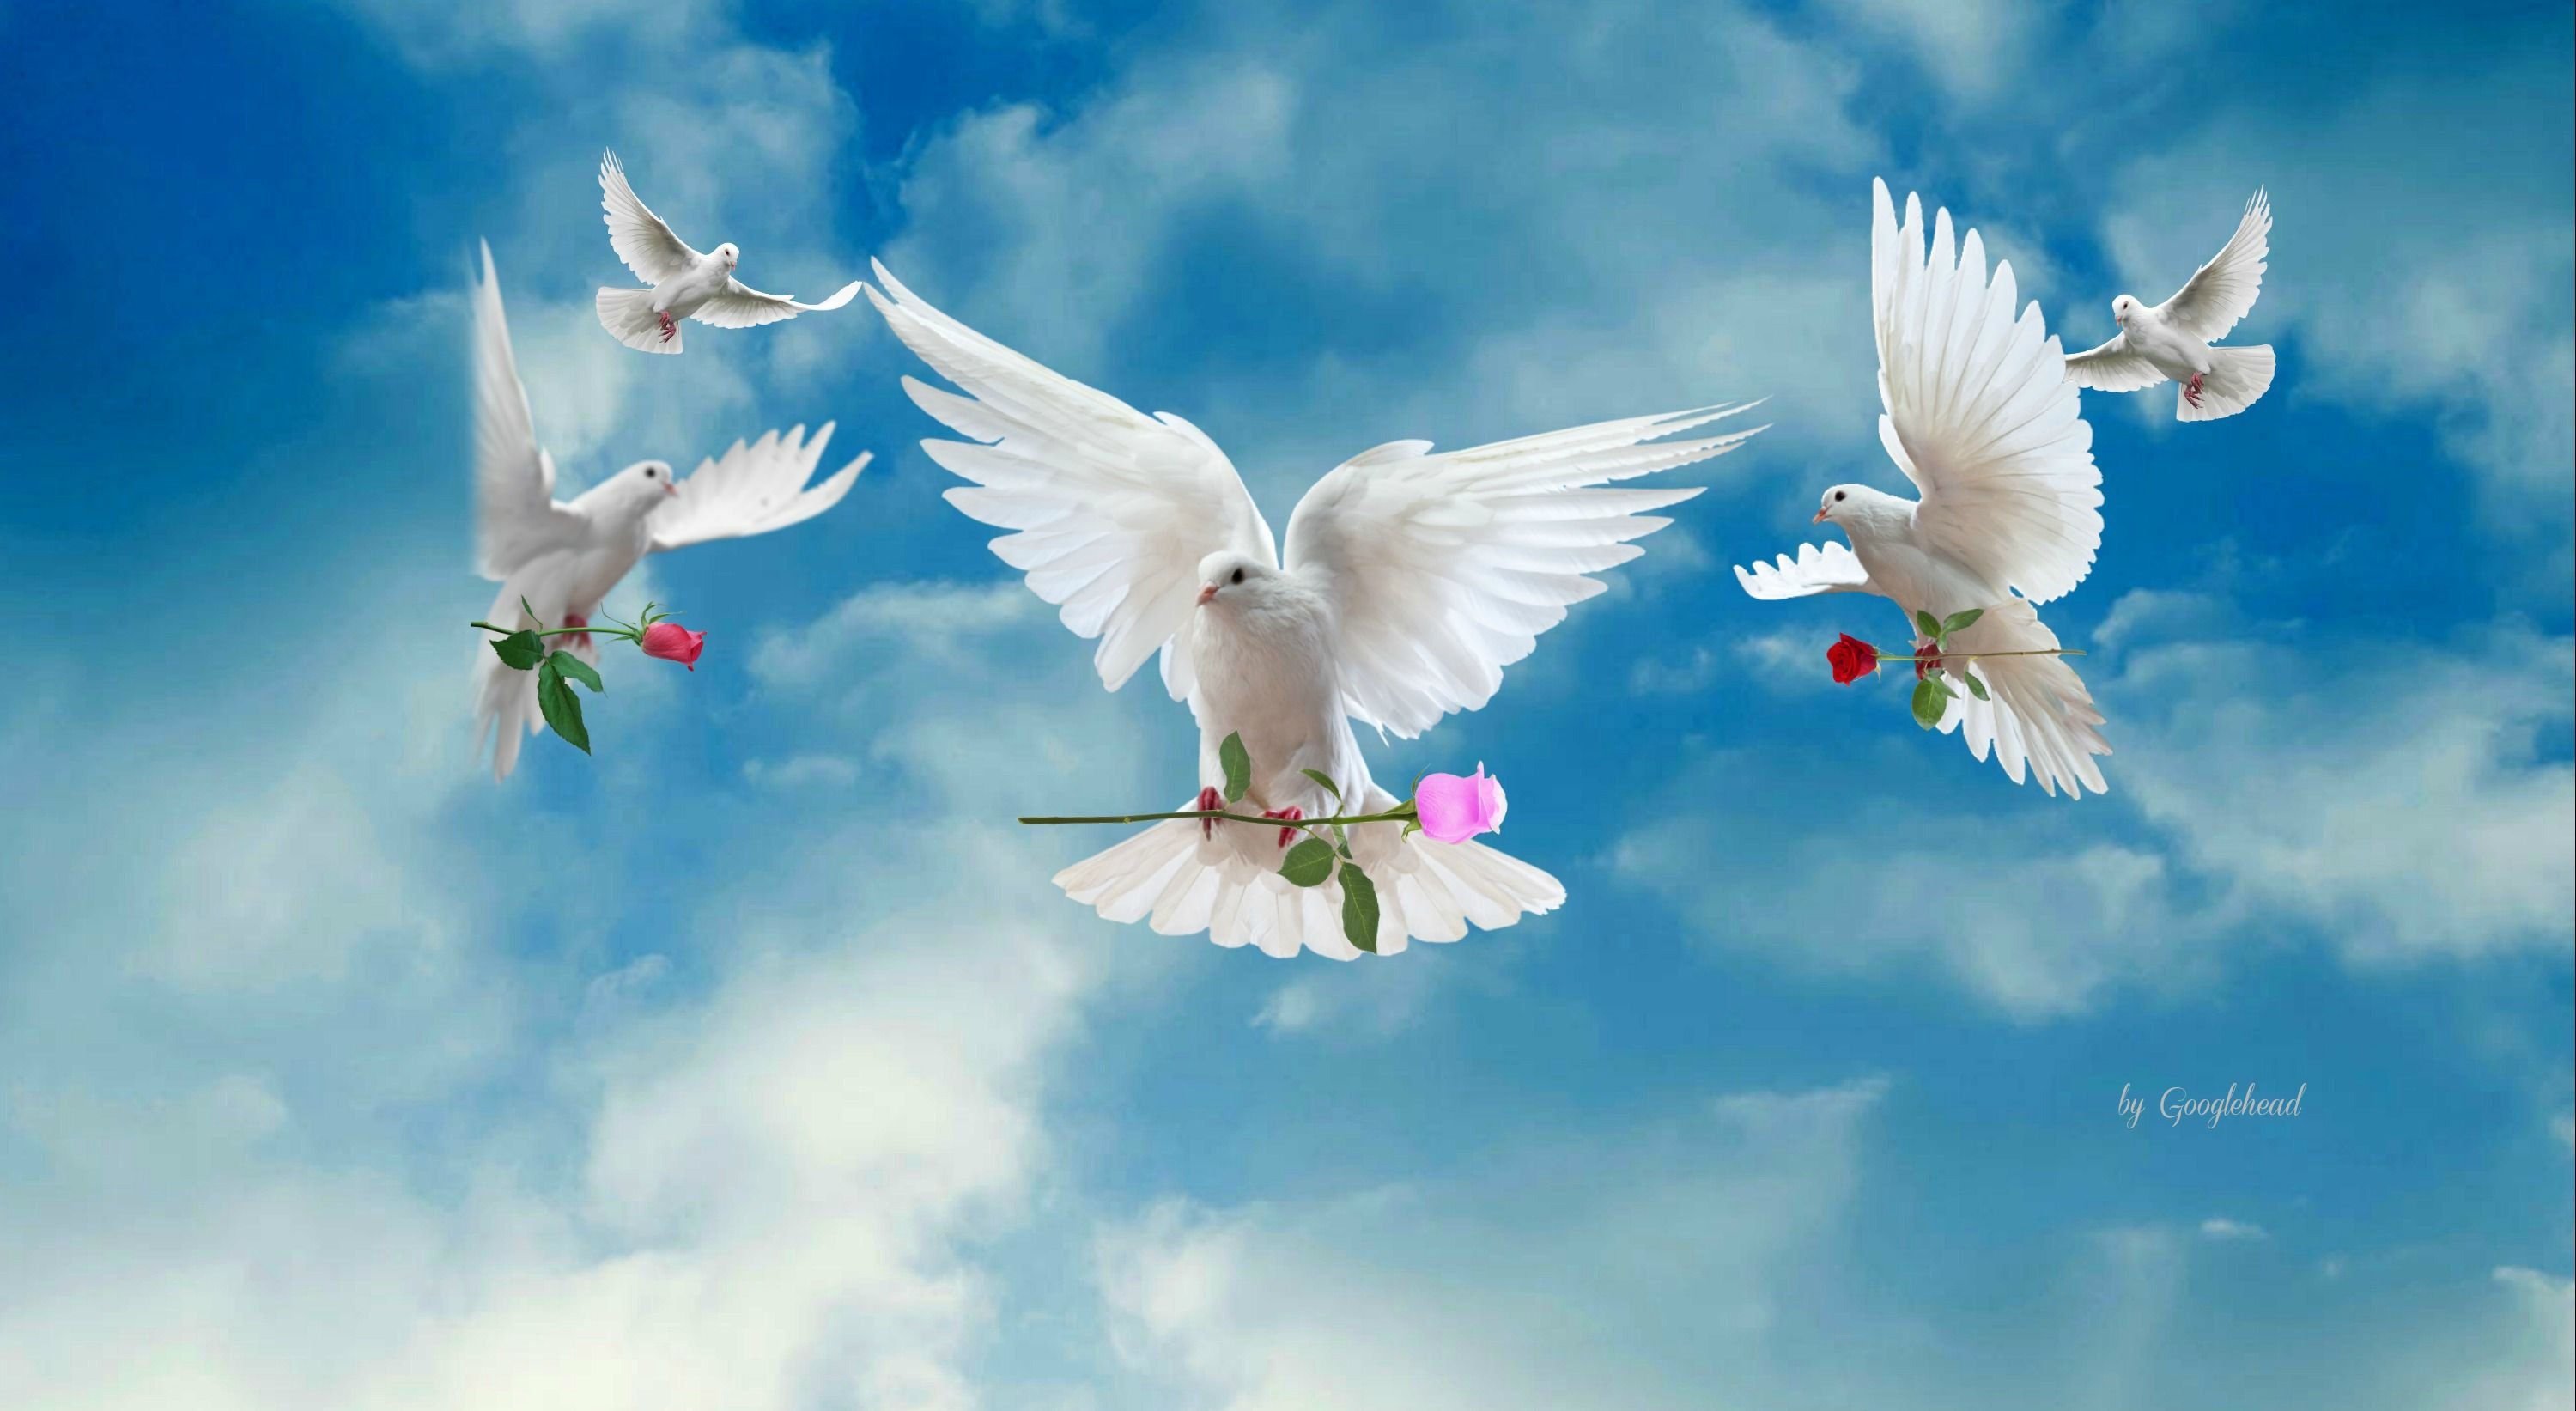 Желаю здоровья мирного неба над головой. Открытки о мире и добре.